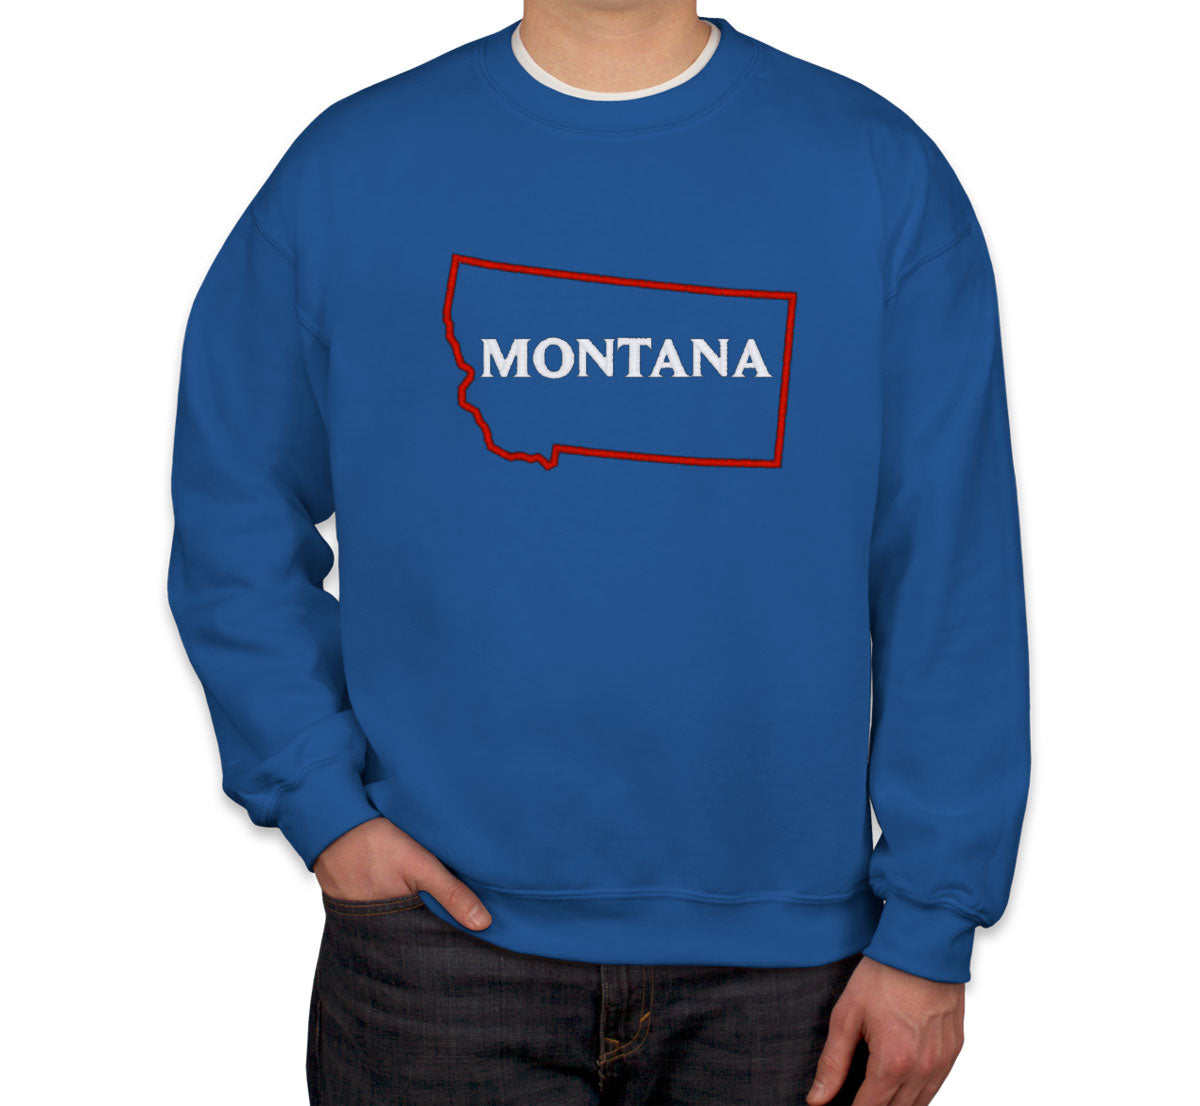 Montana Embroidered Unisex Sweatshirt